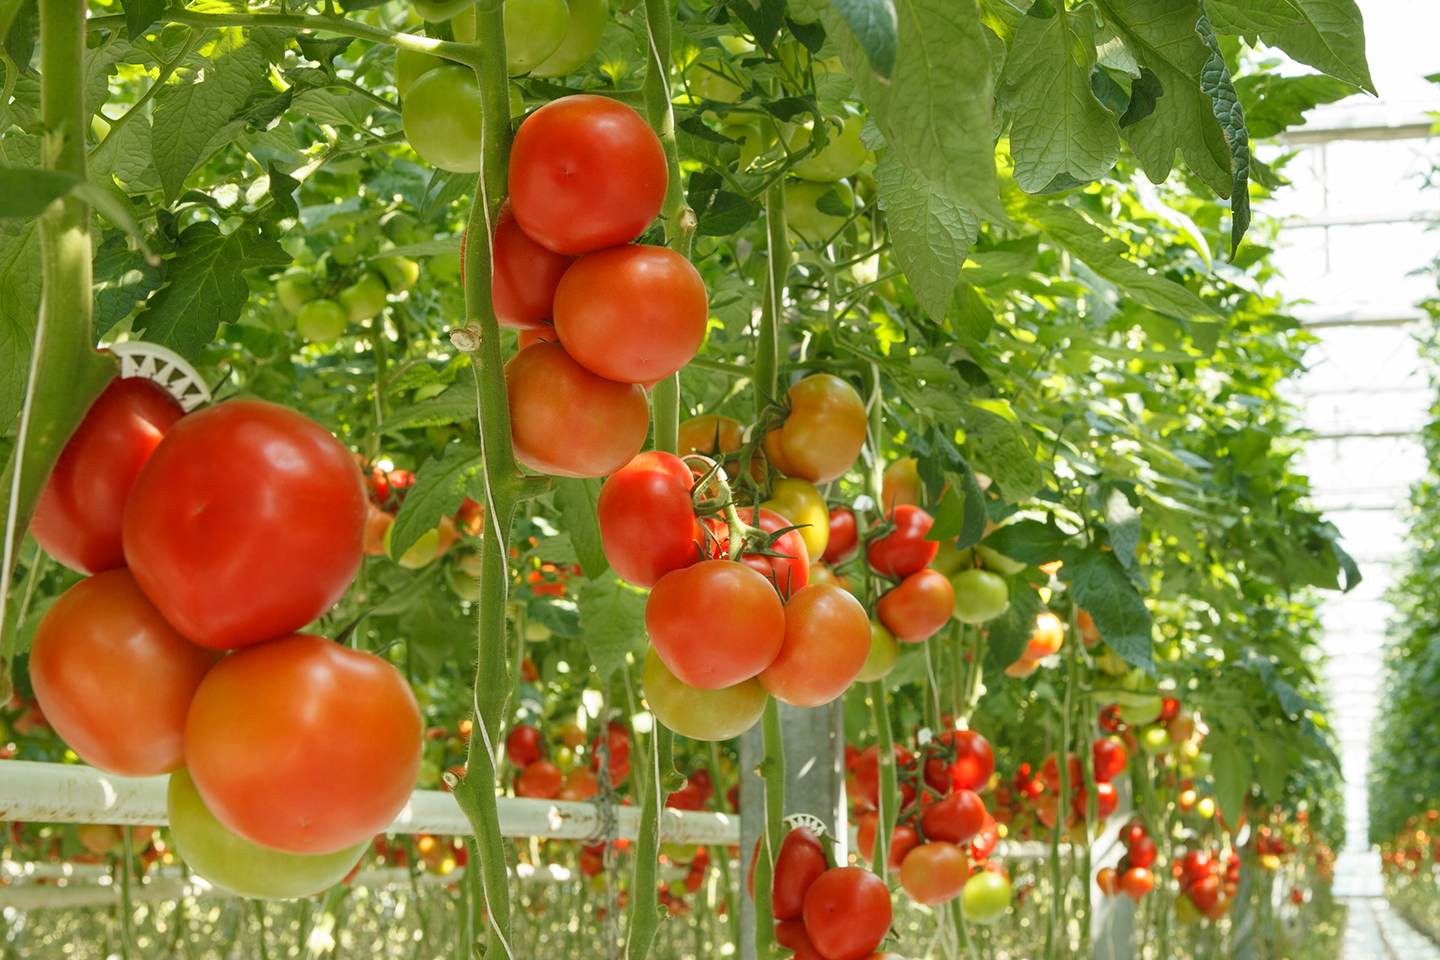 Tros tomaten in kas